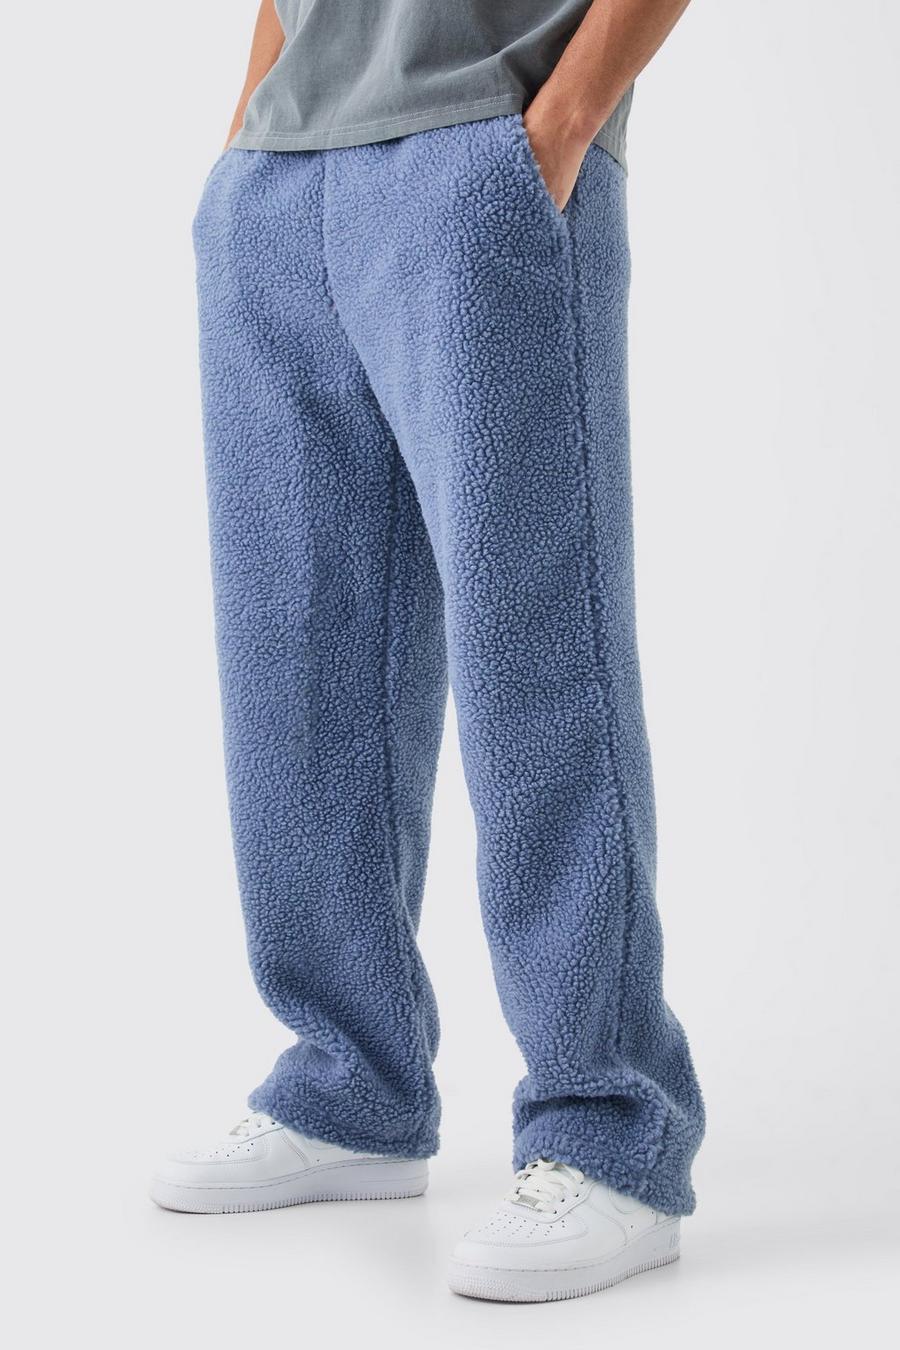 Pantalón deportivo recto de borreguito, Slate blue